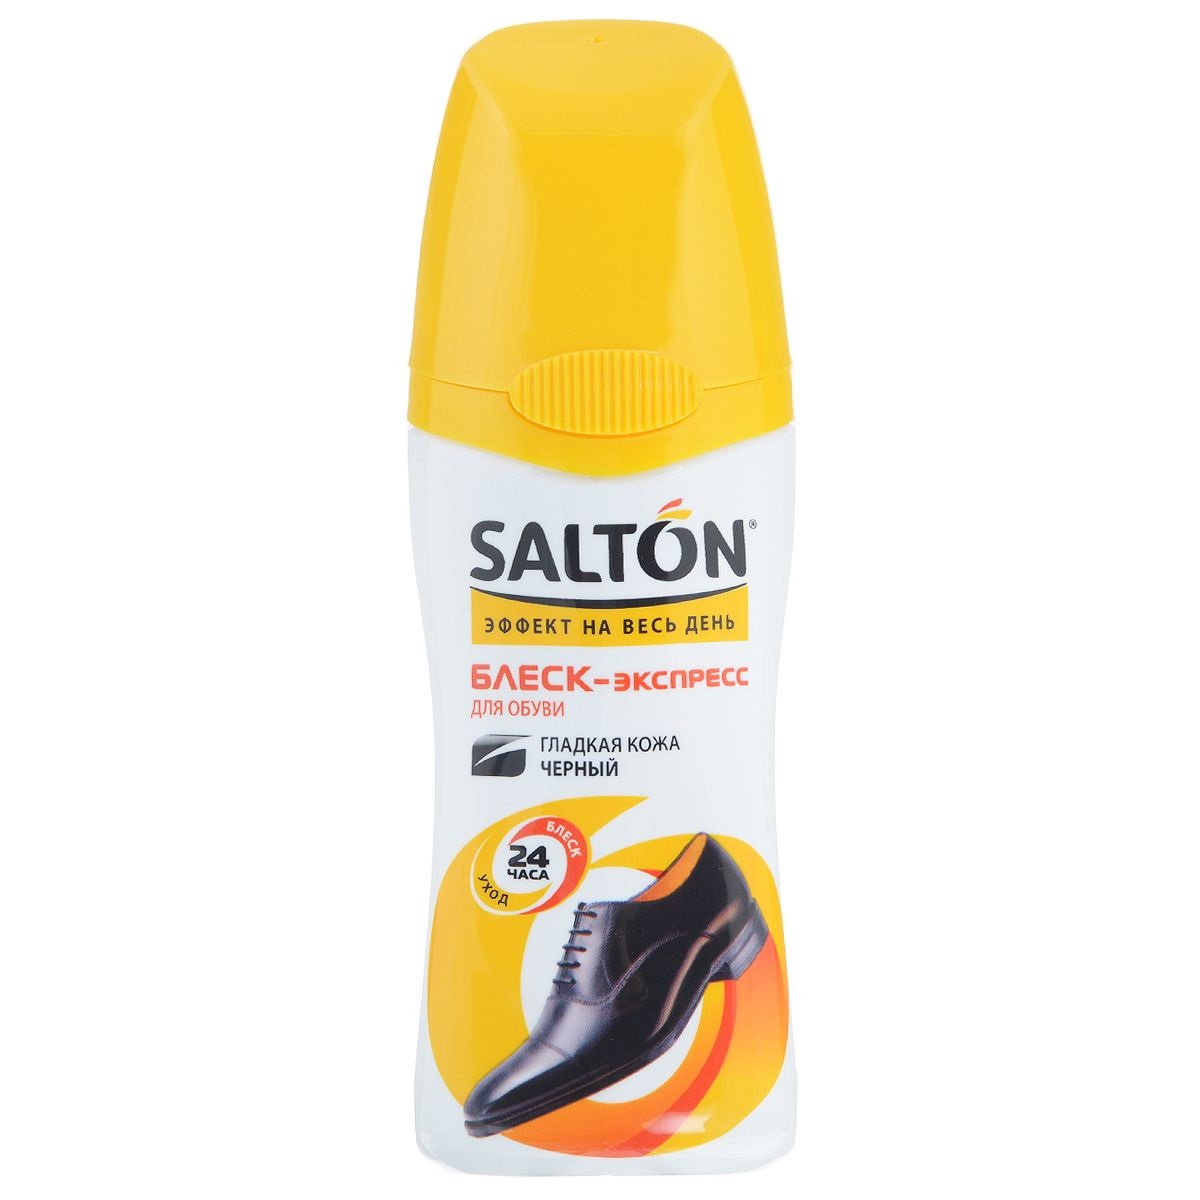 Лучшие средства для обуви. Крем для обуви Salton черный 50 мл. Salton блеск экспресс для обуви. Salton крем-блеск для обуви с аппликатором. Salton блеск-экспресс черный 50 мл.